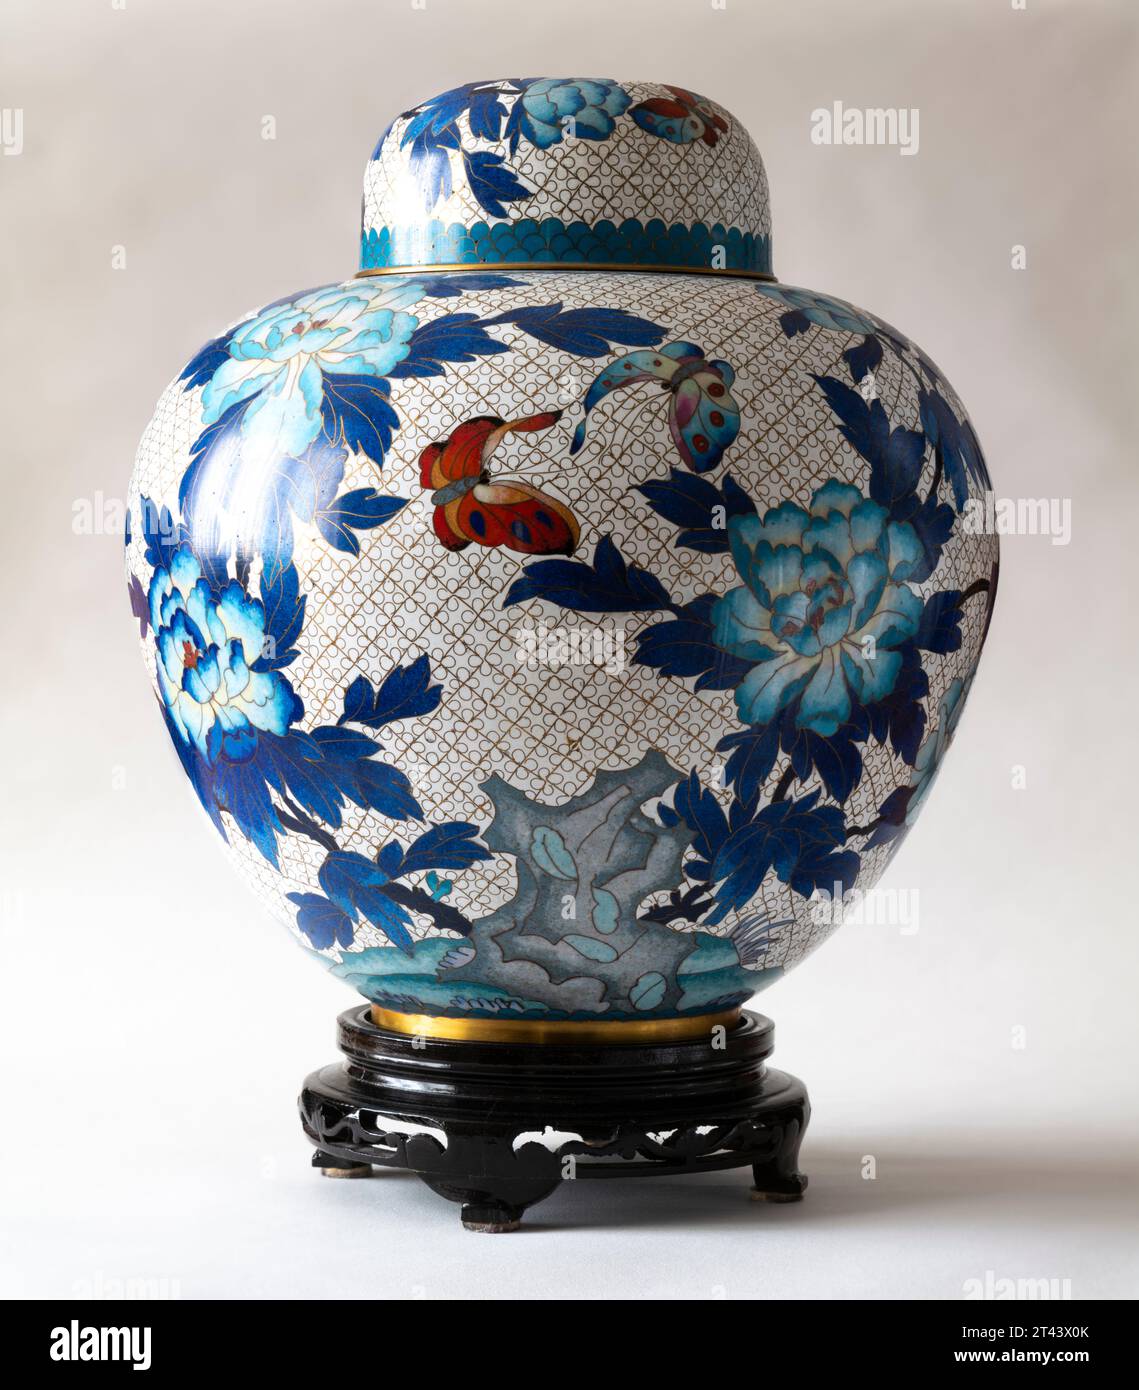 Cloisonné vase Stock Photo